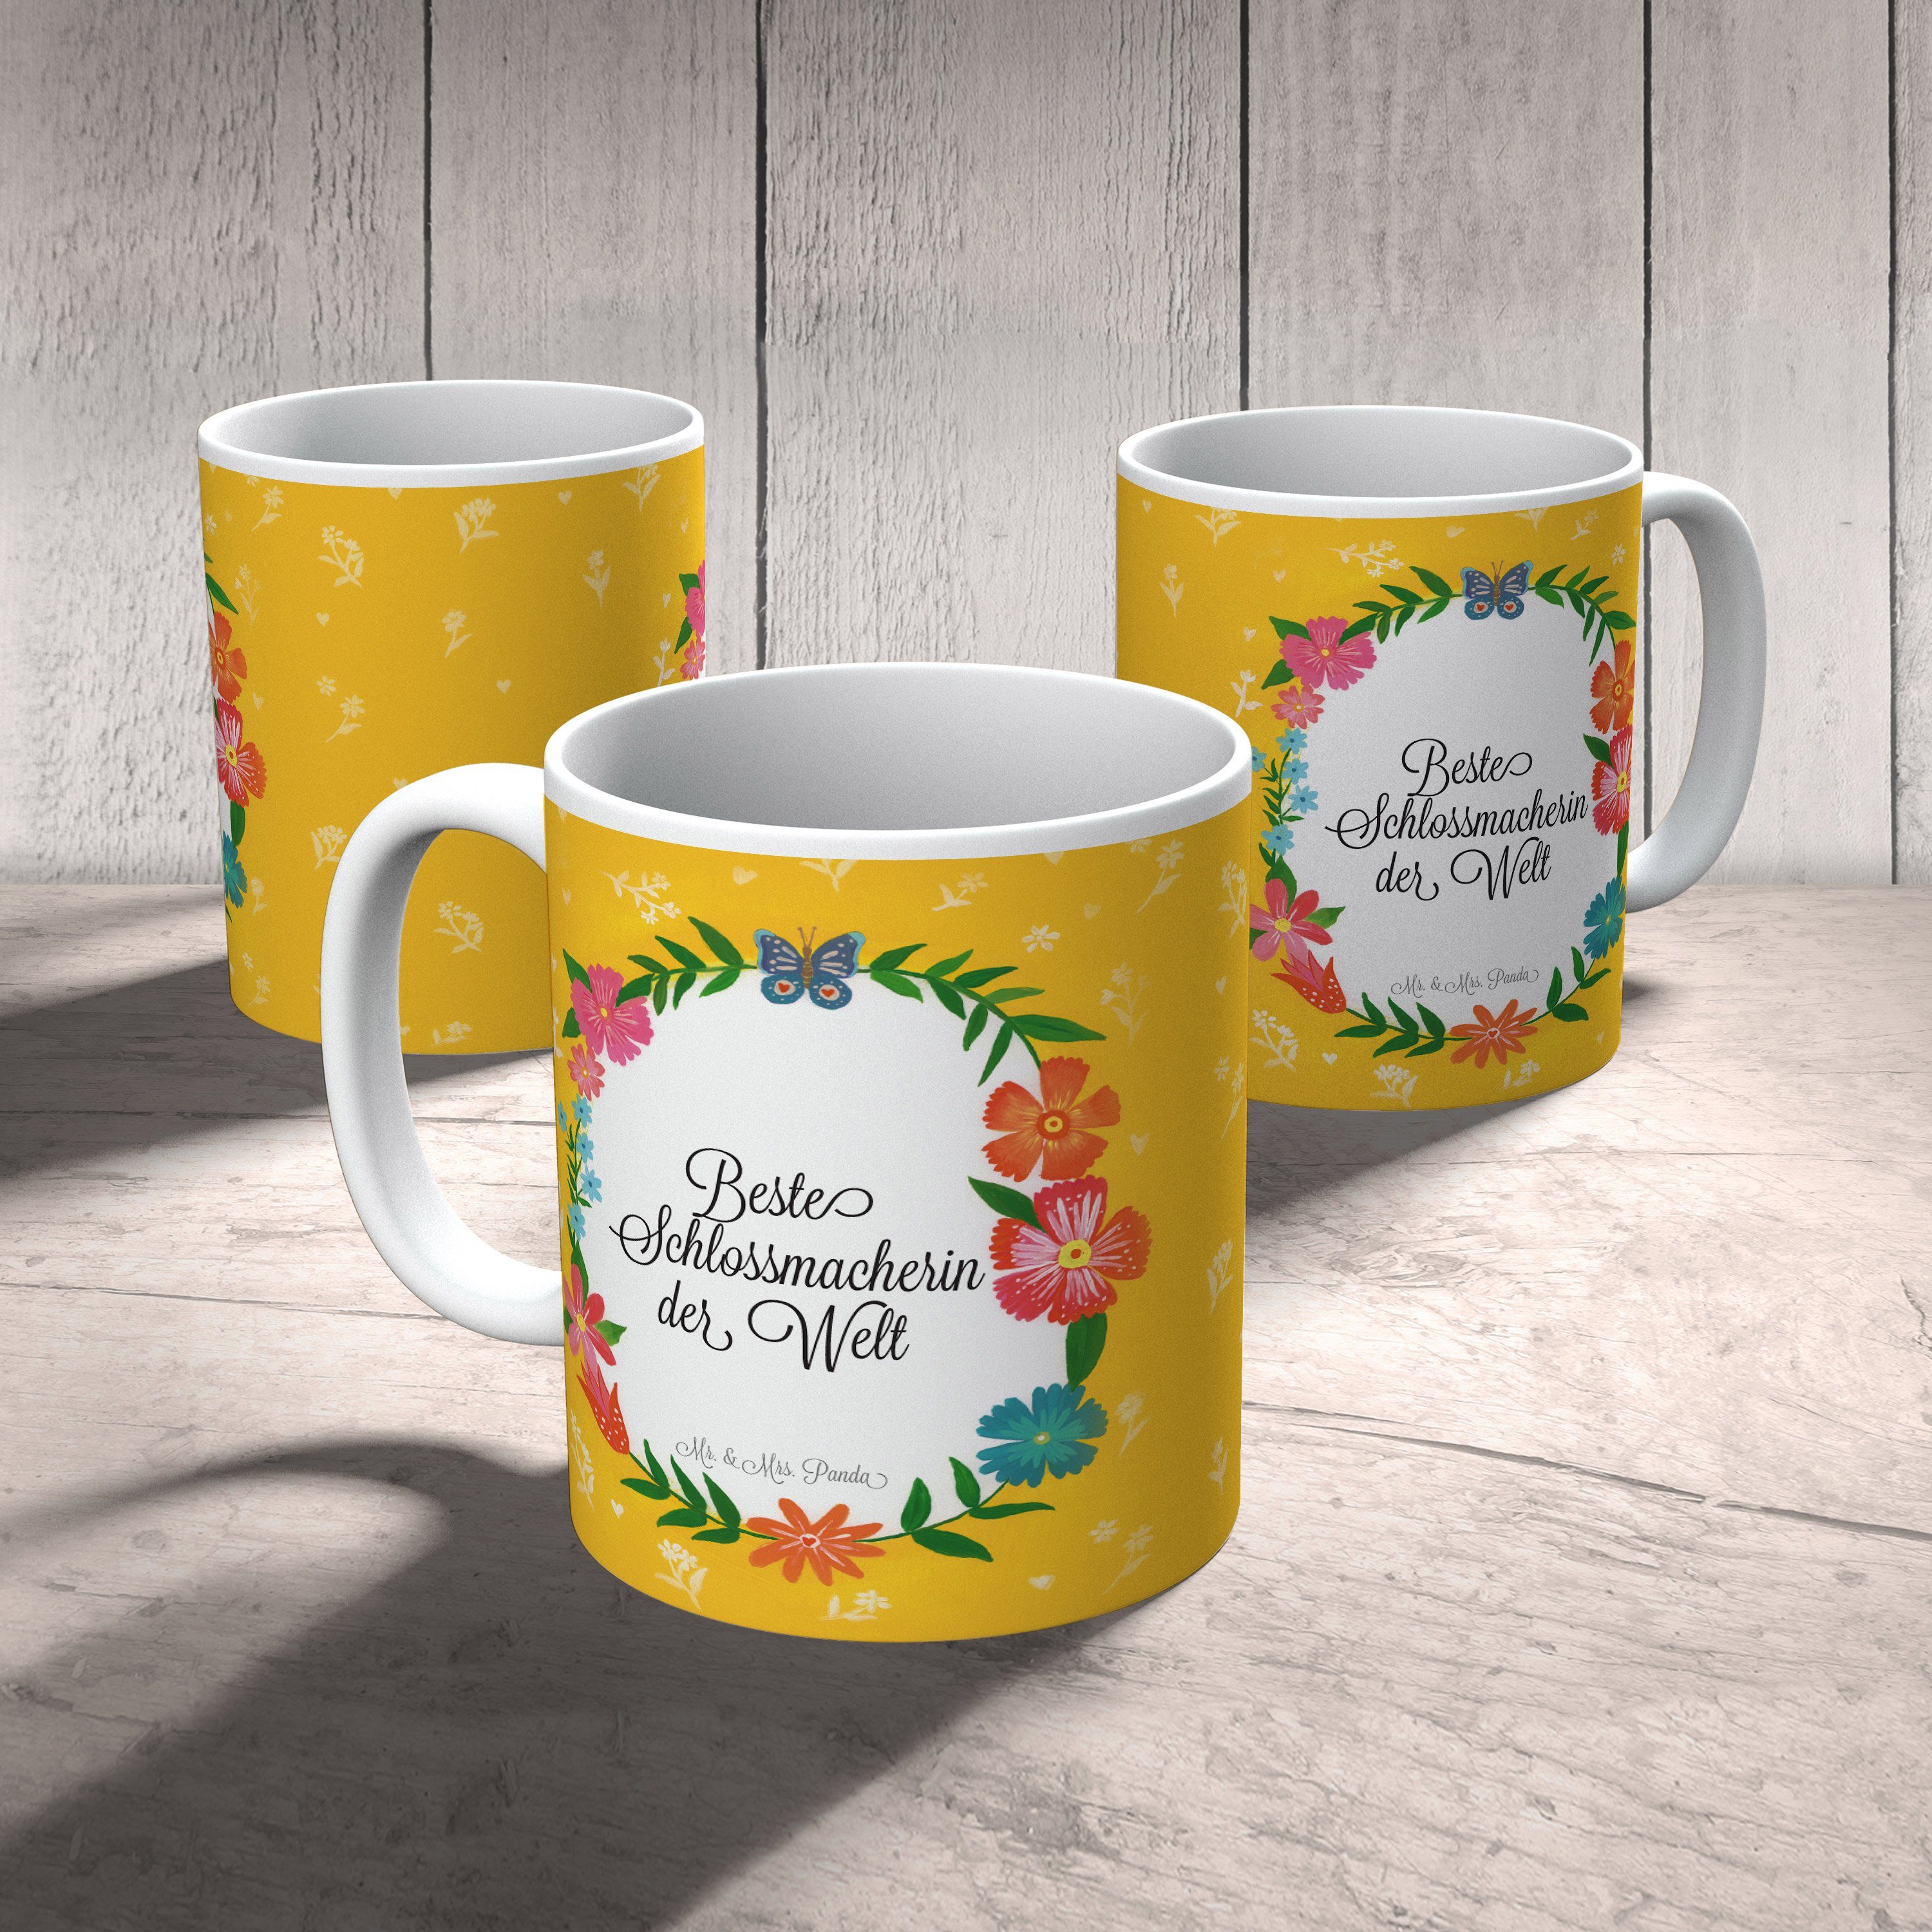 Mr. & Mrs. Panda Keramik - Tasse Kaffeebecher, Schlossmacherin Geschenk, Gratulation, Motive, Tasse